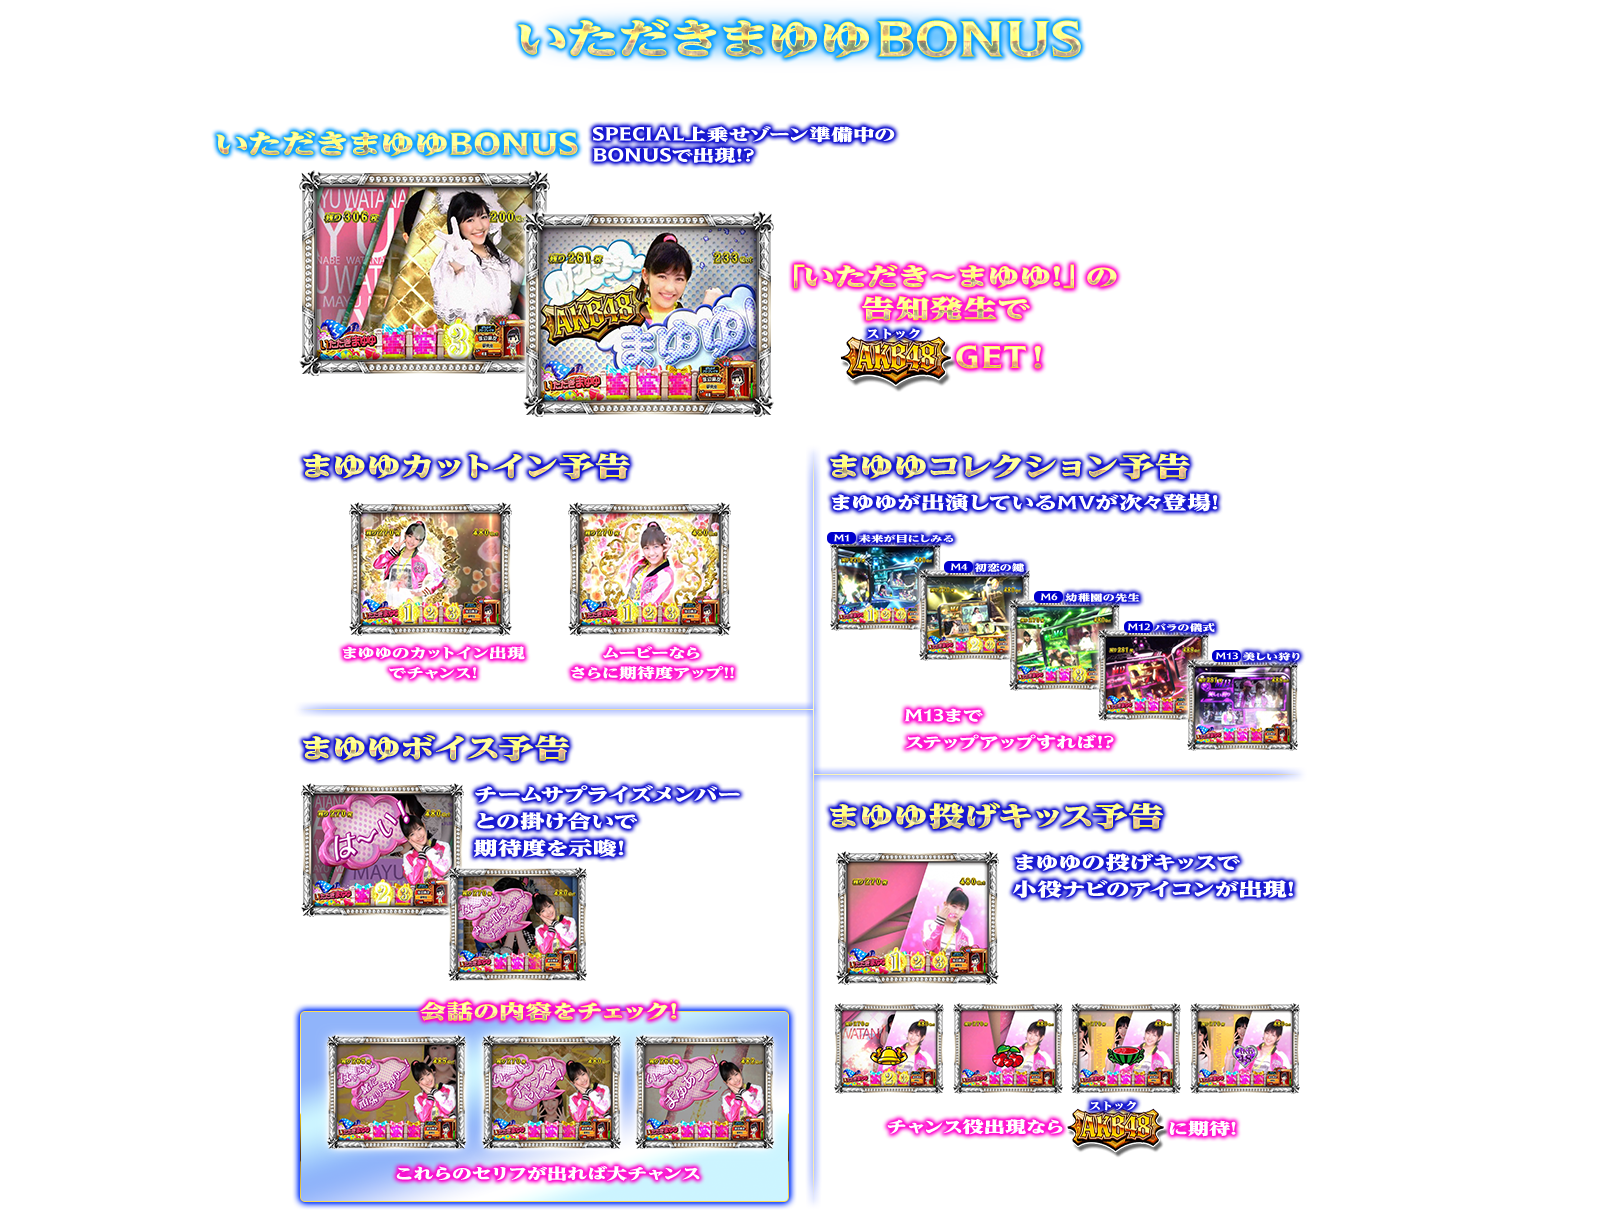 ぱちスロAKB48 バラの儀式の演出紹介。通常時のBONUSのいただきまゆゆBONUSです。AKB48ファン、スロット初心者、ヘビーユーザーまで誰もが楽しめるDDスペックで登場!!